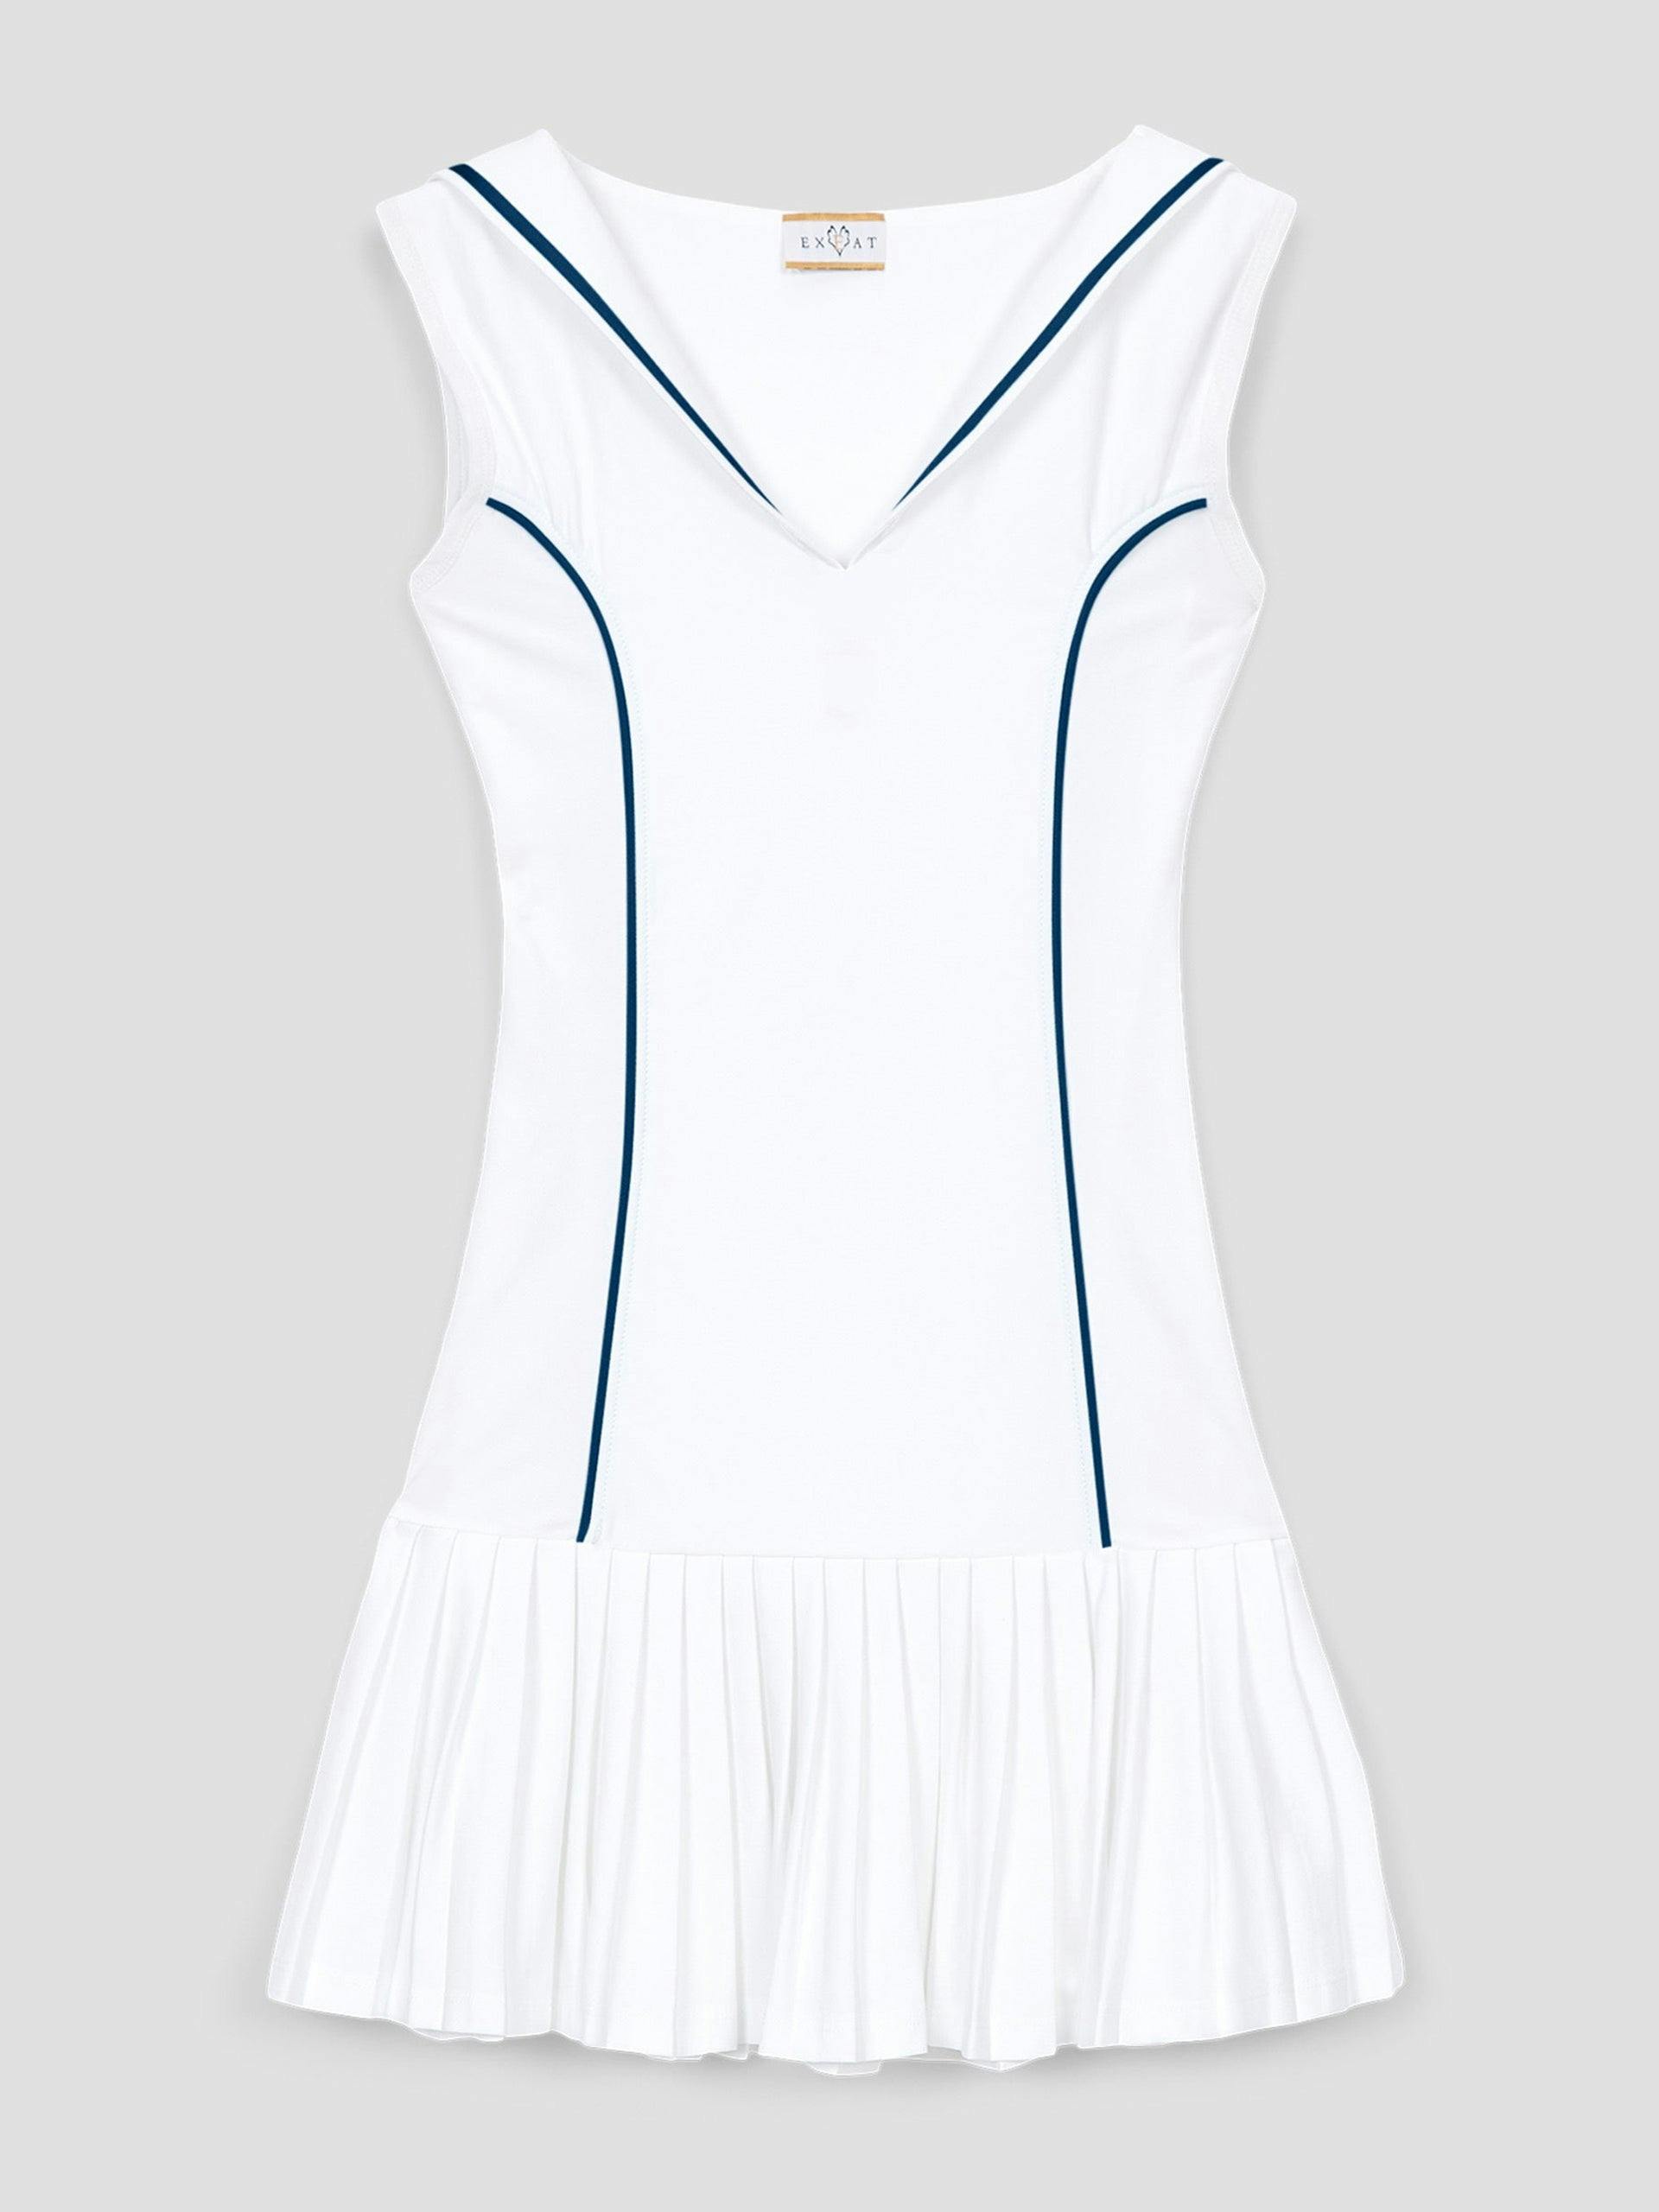 The Duchess tennis dress